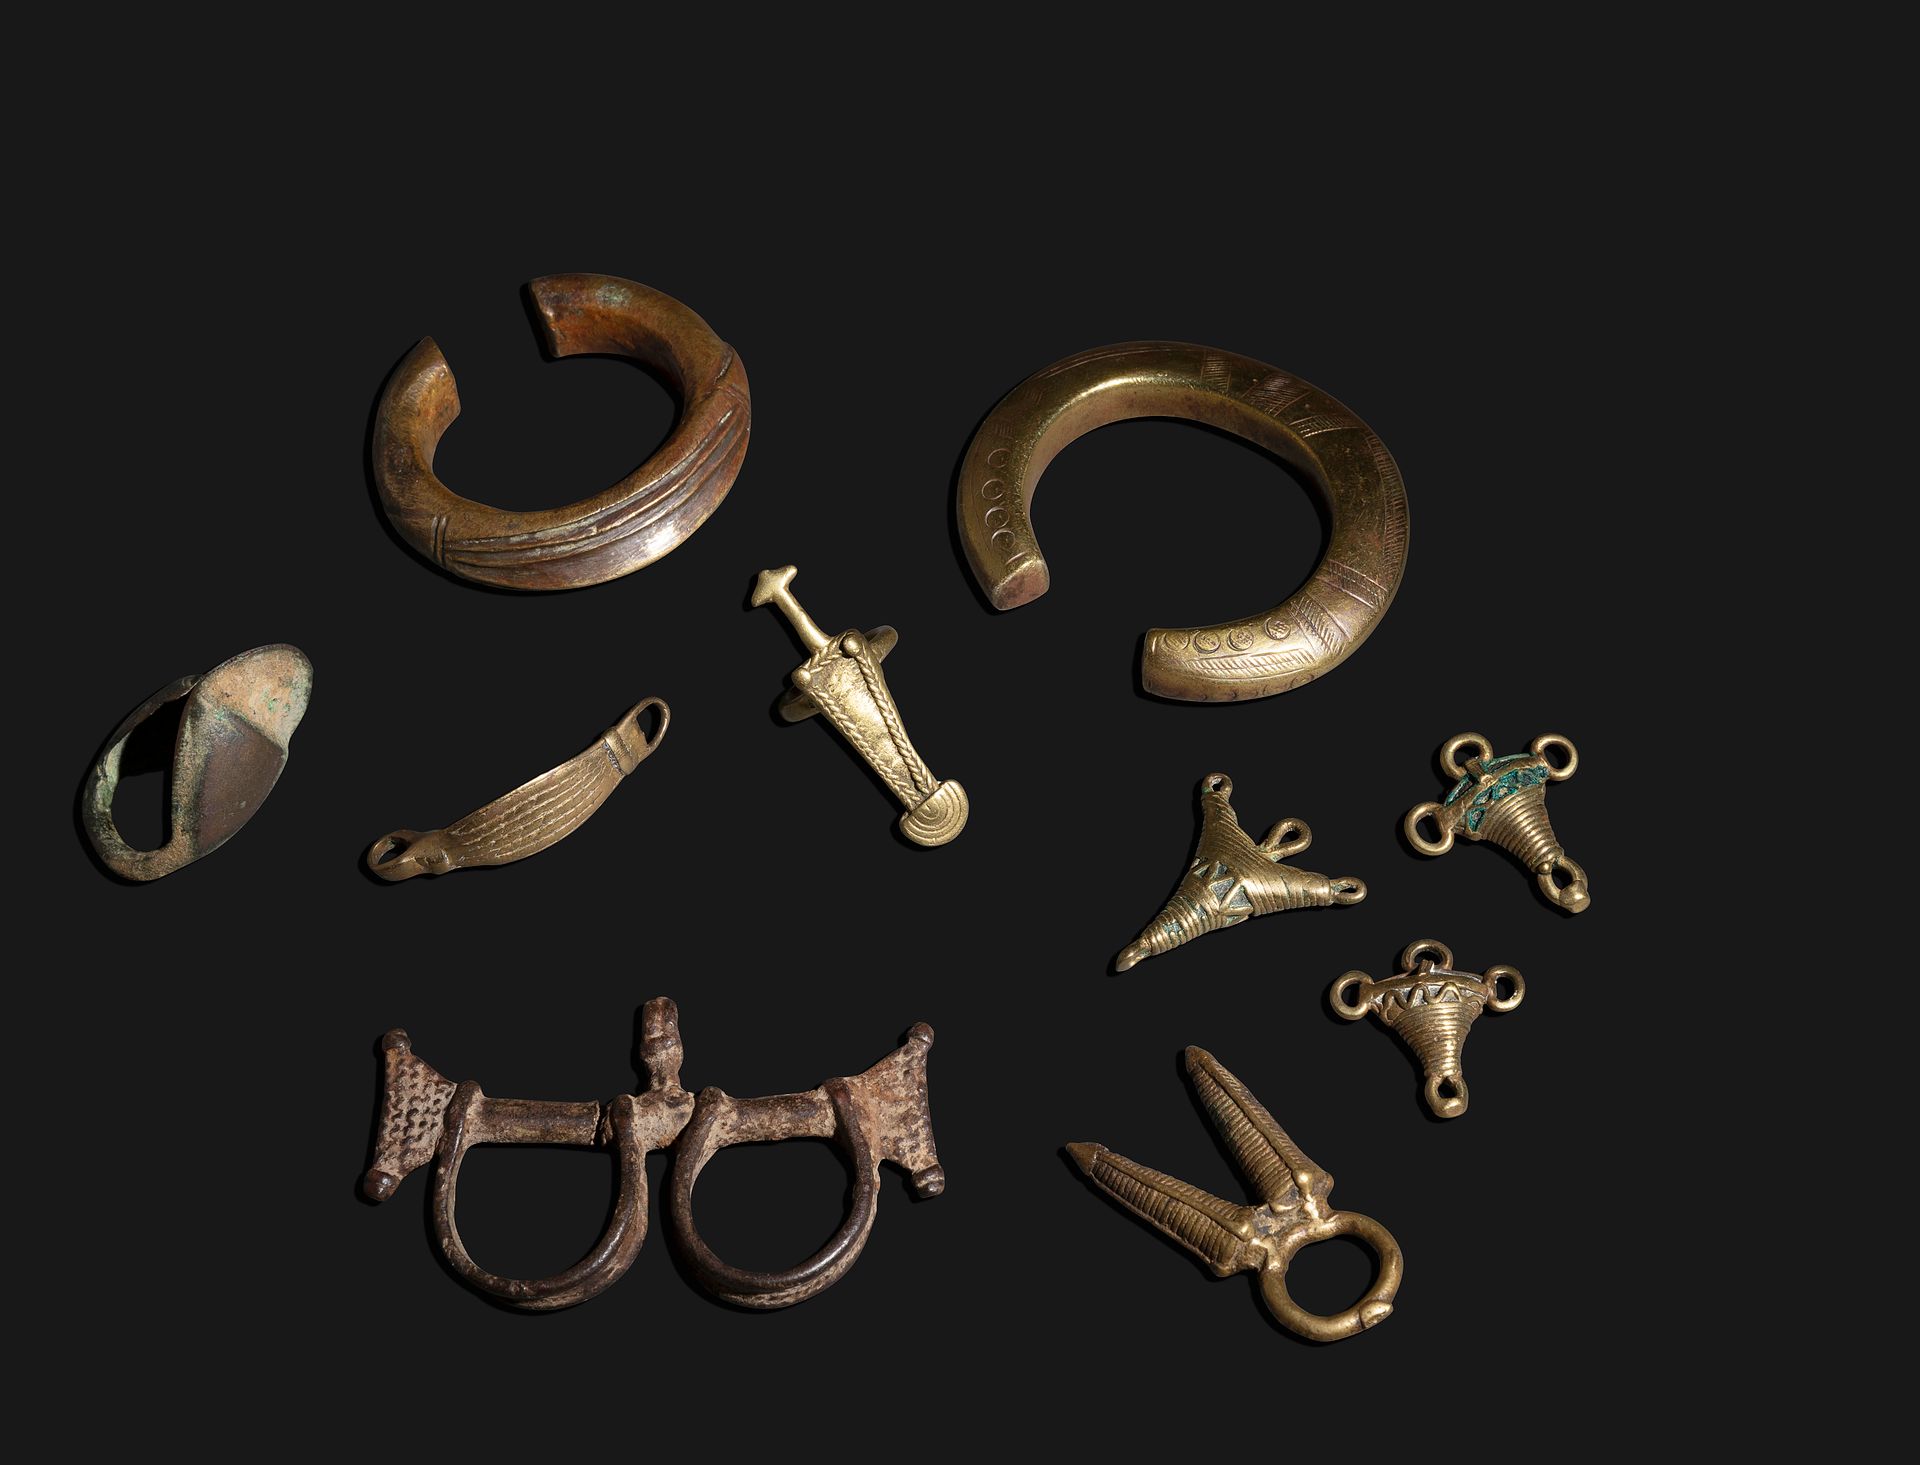 Null 一件拍品包括三个古老的戒指，其中一个有一把匕首，还有一个非常古老的戒指，其形状与马具有关，四个护身符吊坠，两个手镯，以及一个重要和罕见的奴隶手镯形式的&hellip;